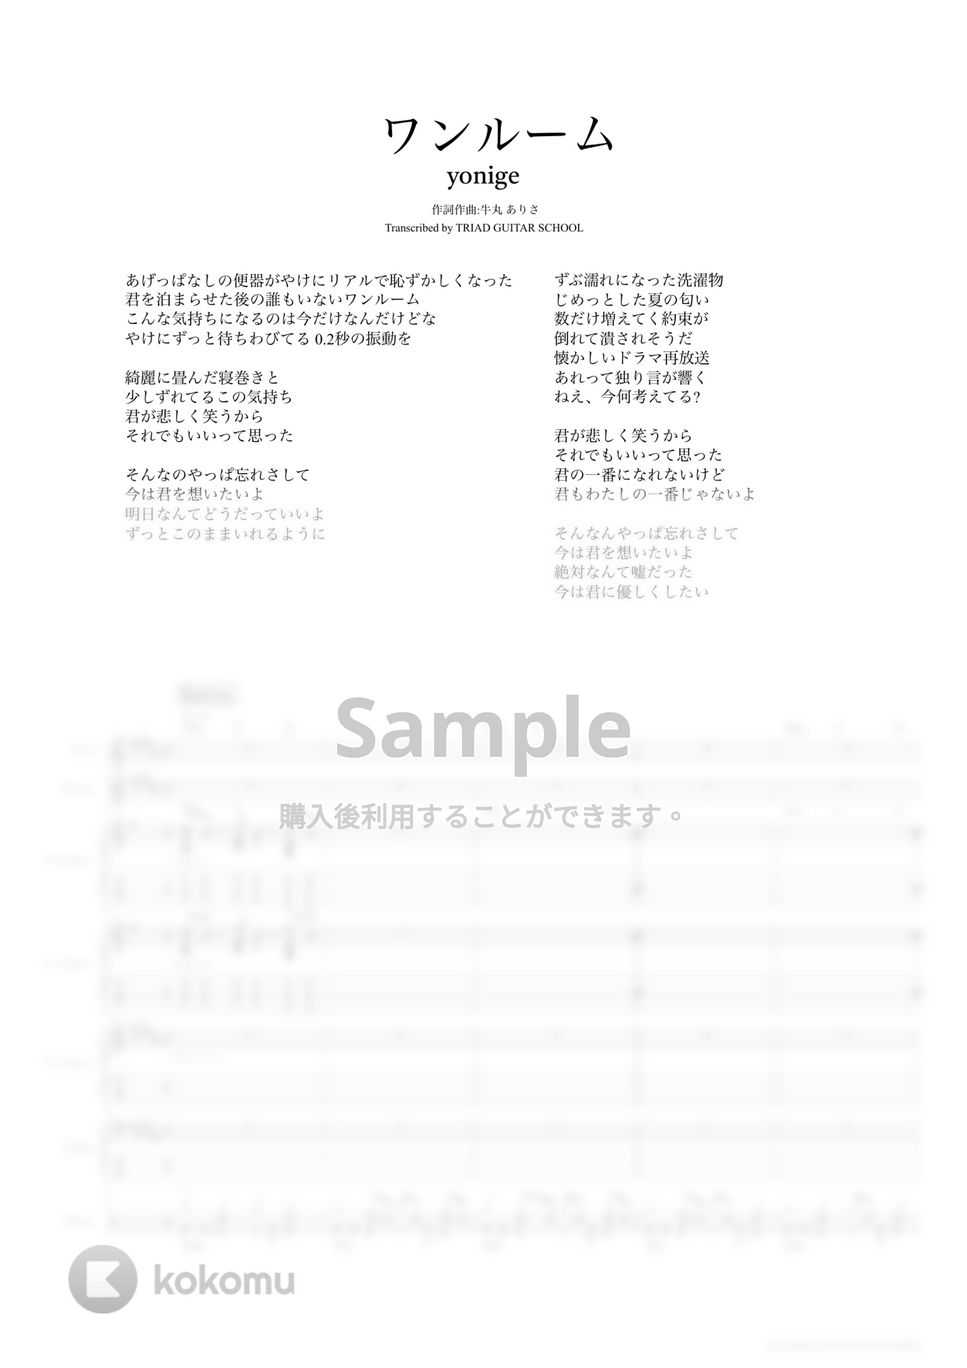 yonige - ワンルーム (バンドスコア) by TRIAD GUITAR SCHOOL